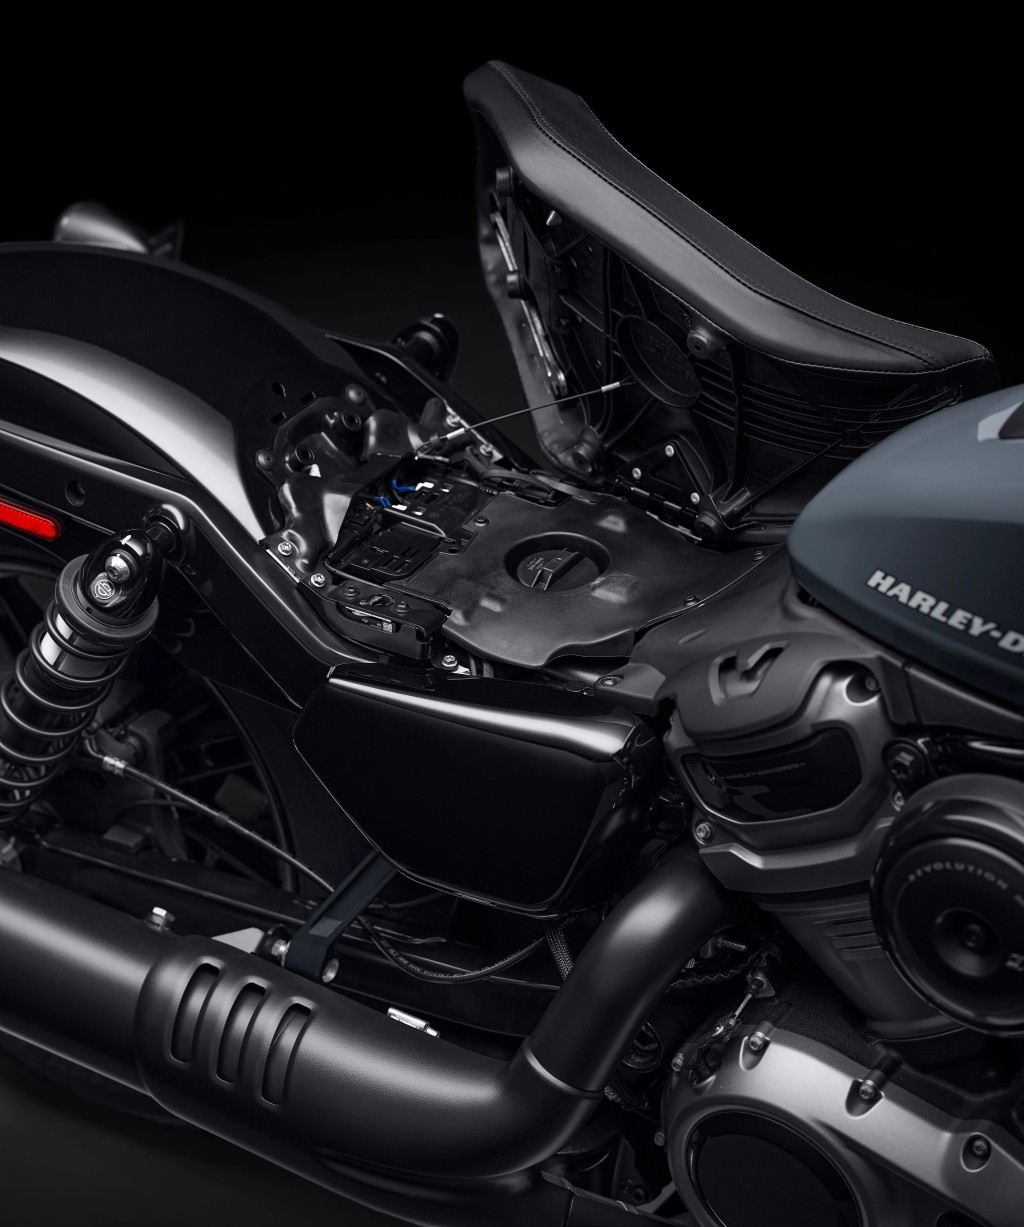 Ra mắt Harley-Davidson Nightster 975: Chiếc Sportster thế hệ mới thay thế cho mẫu xe biểu tượng Iron 883  ảnh 7